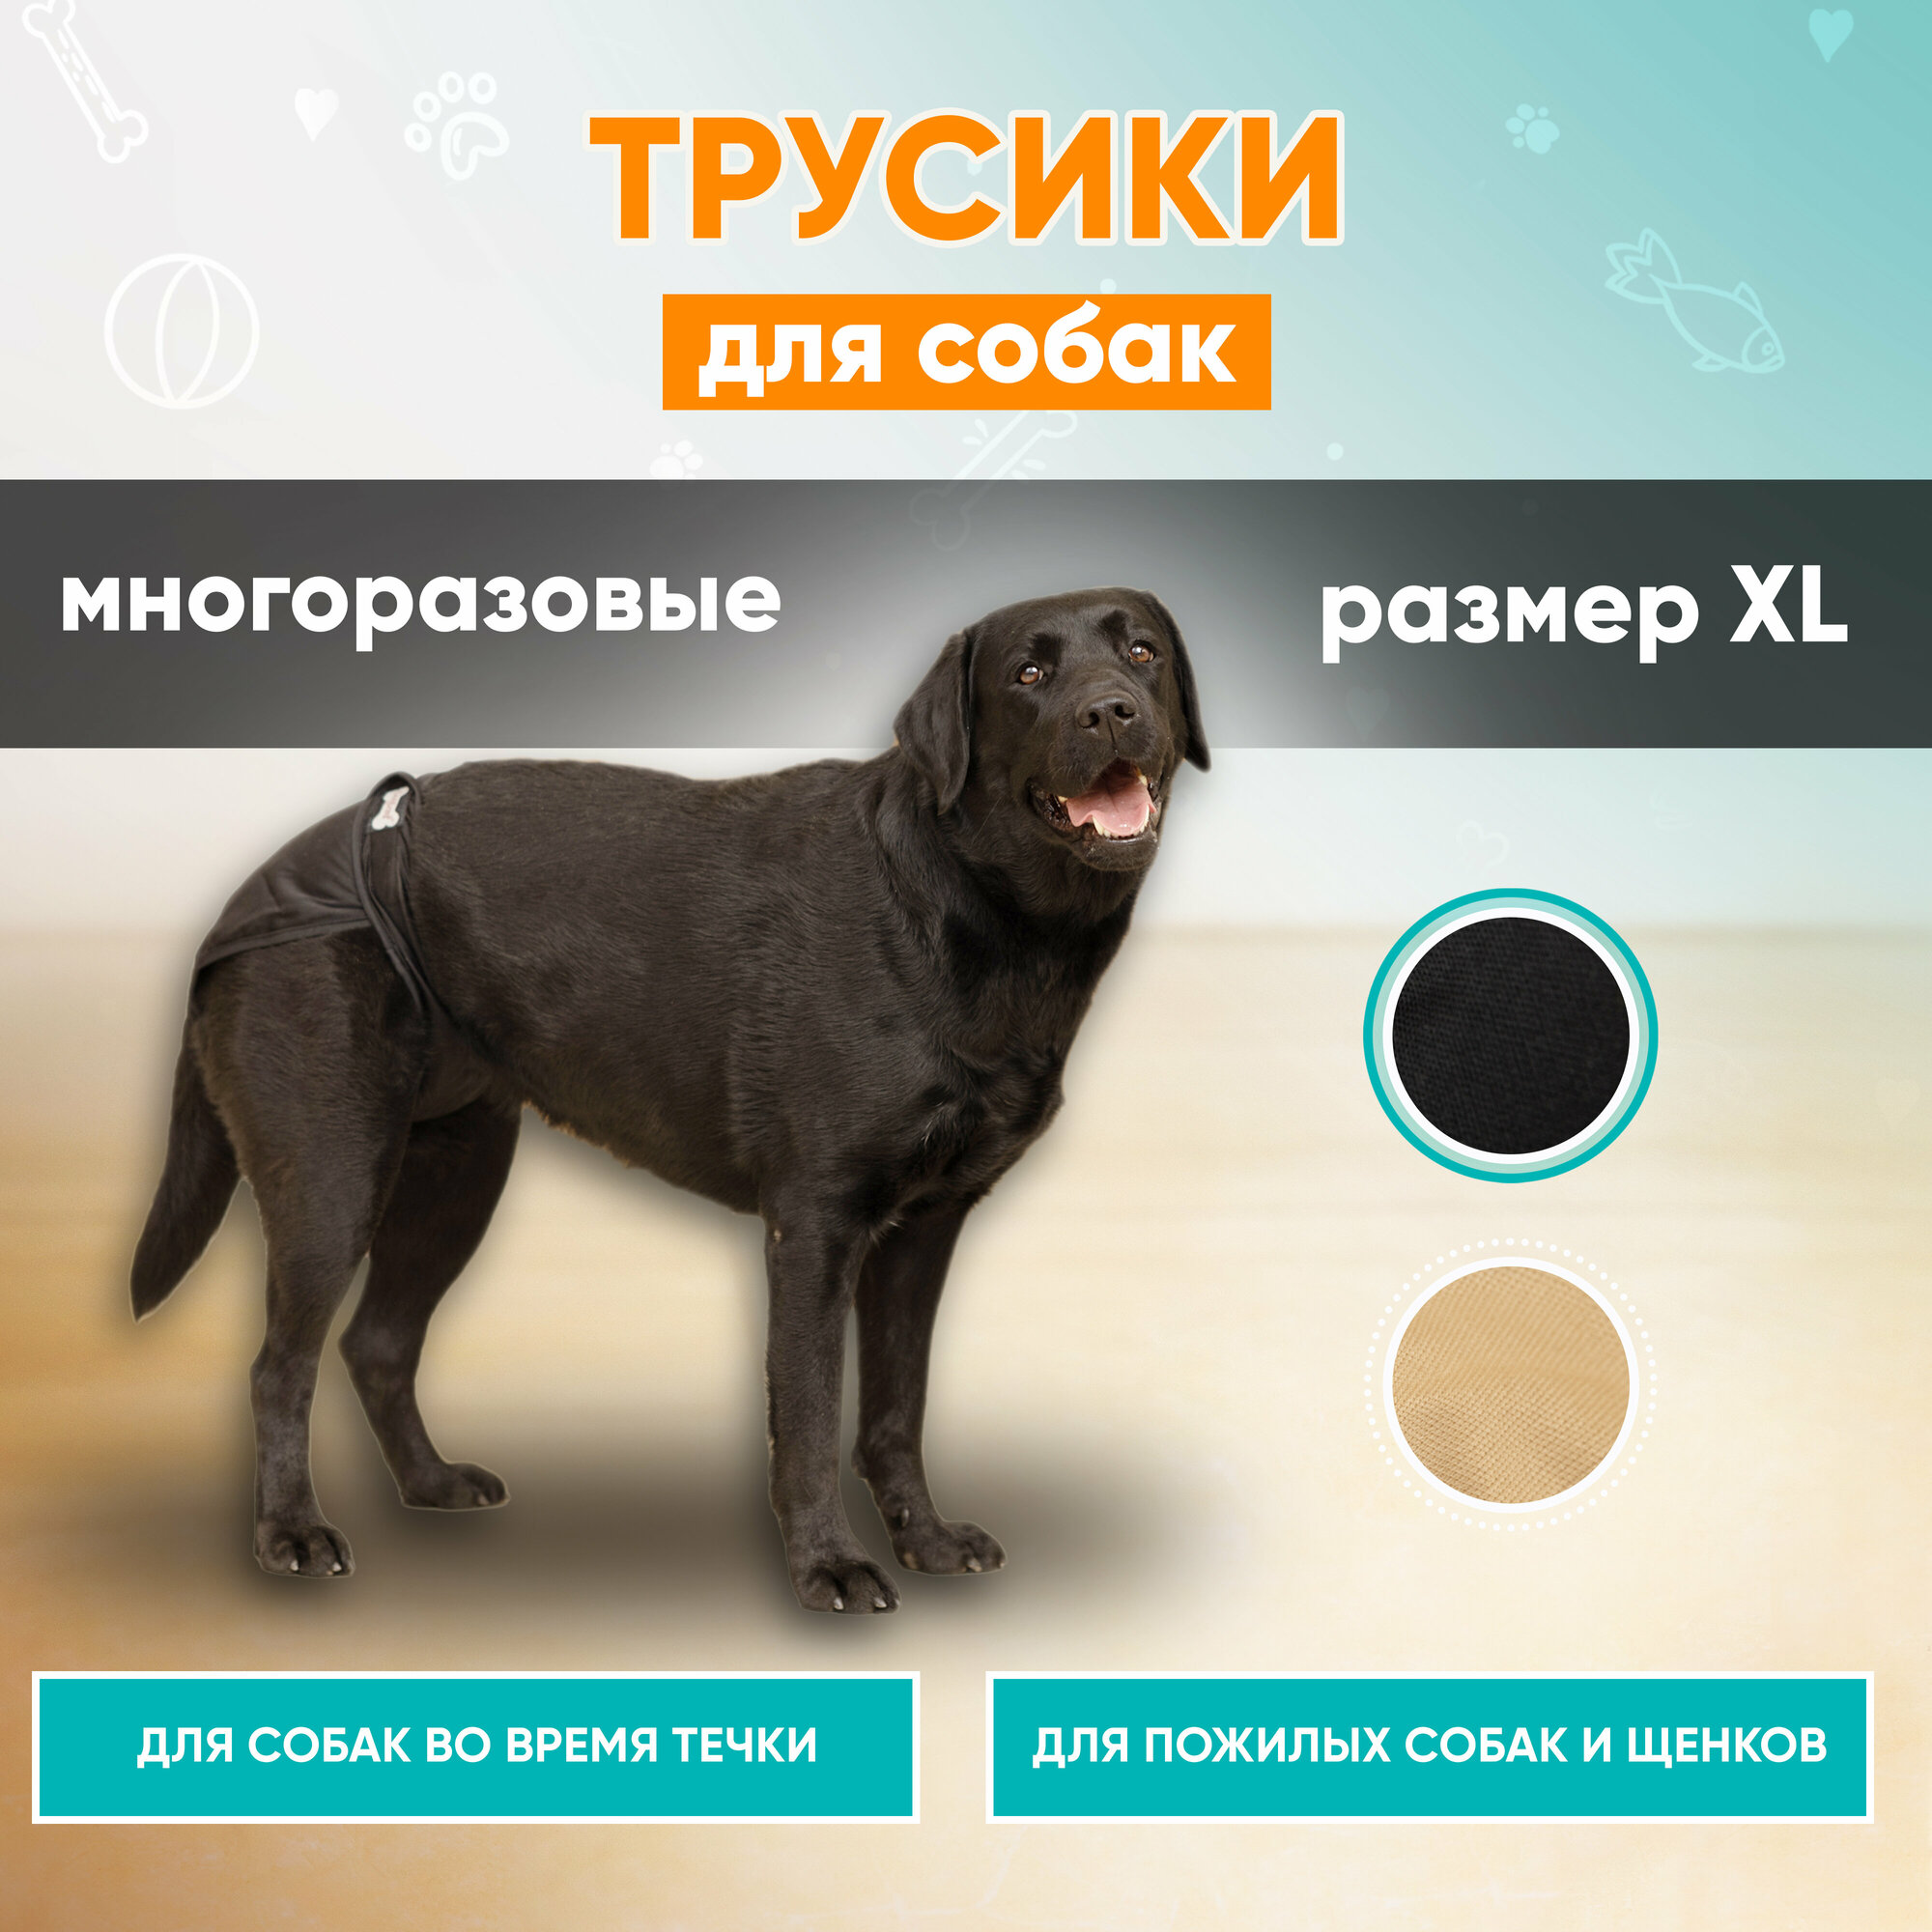 Трусы для собак многоразовые Mr Dog для девочек черные, подгузник для собак, памперс для собак, XL